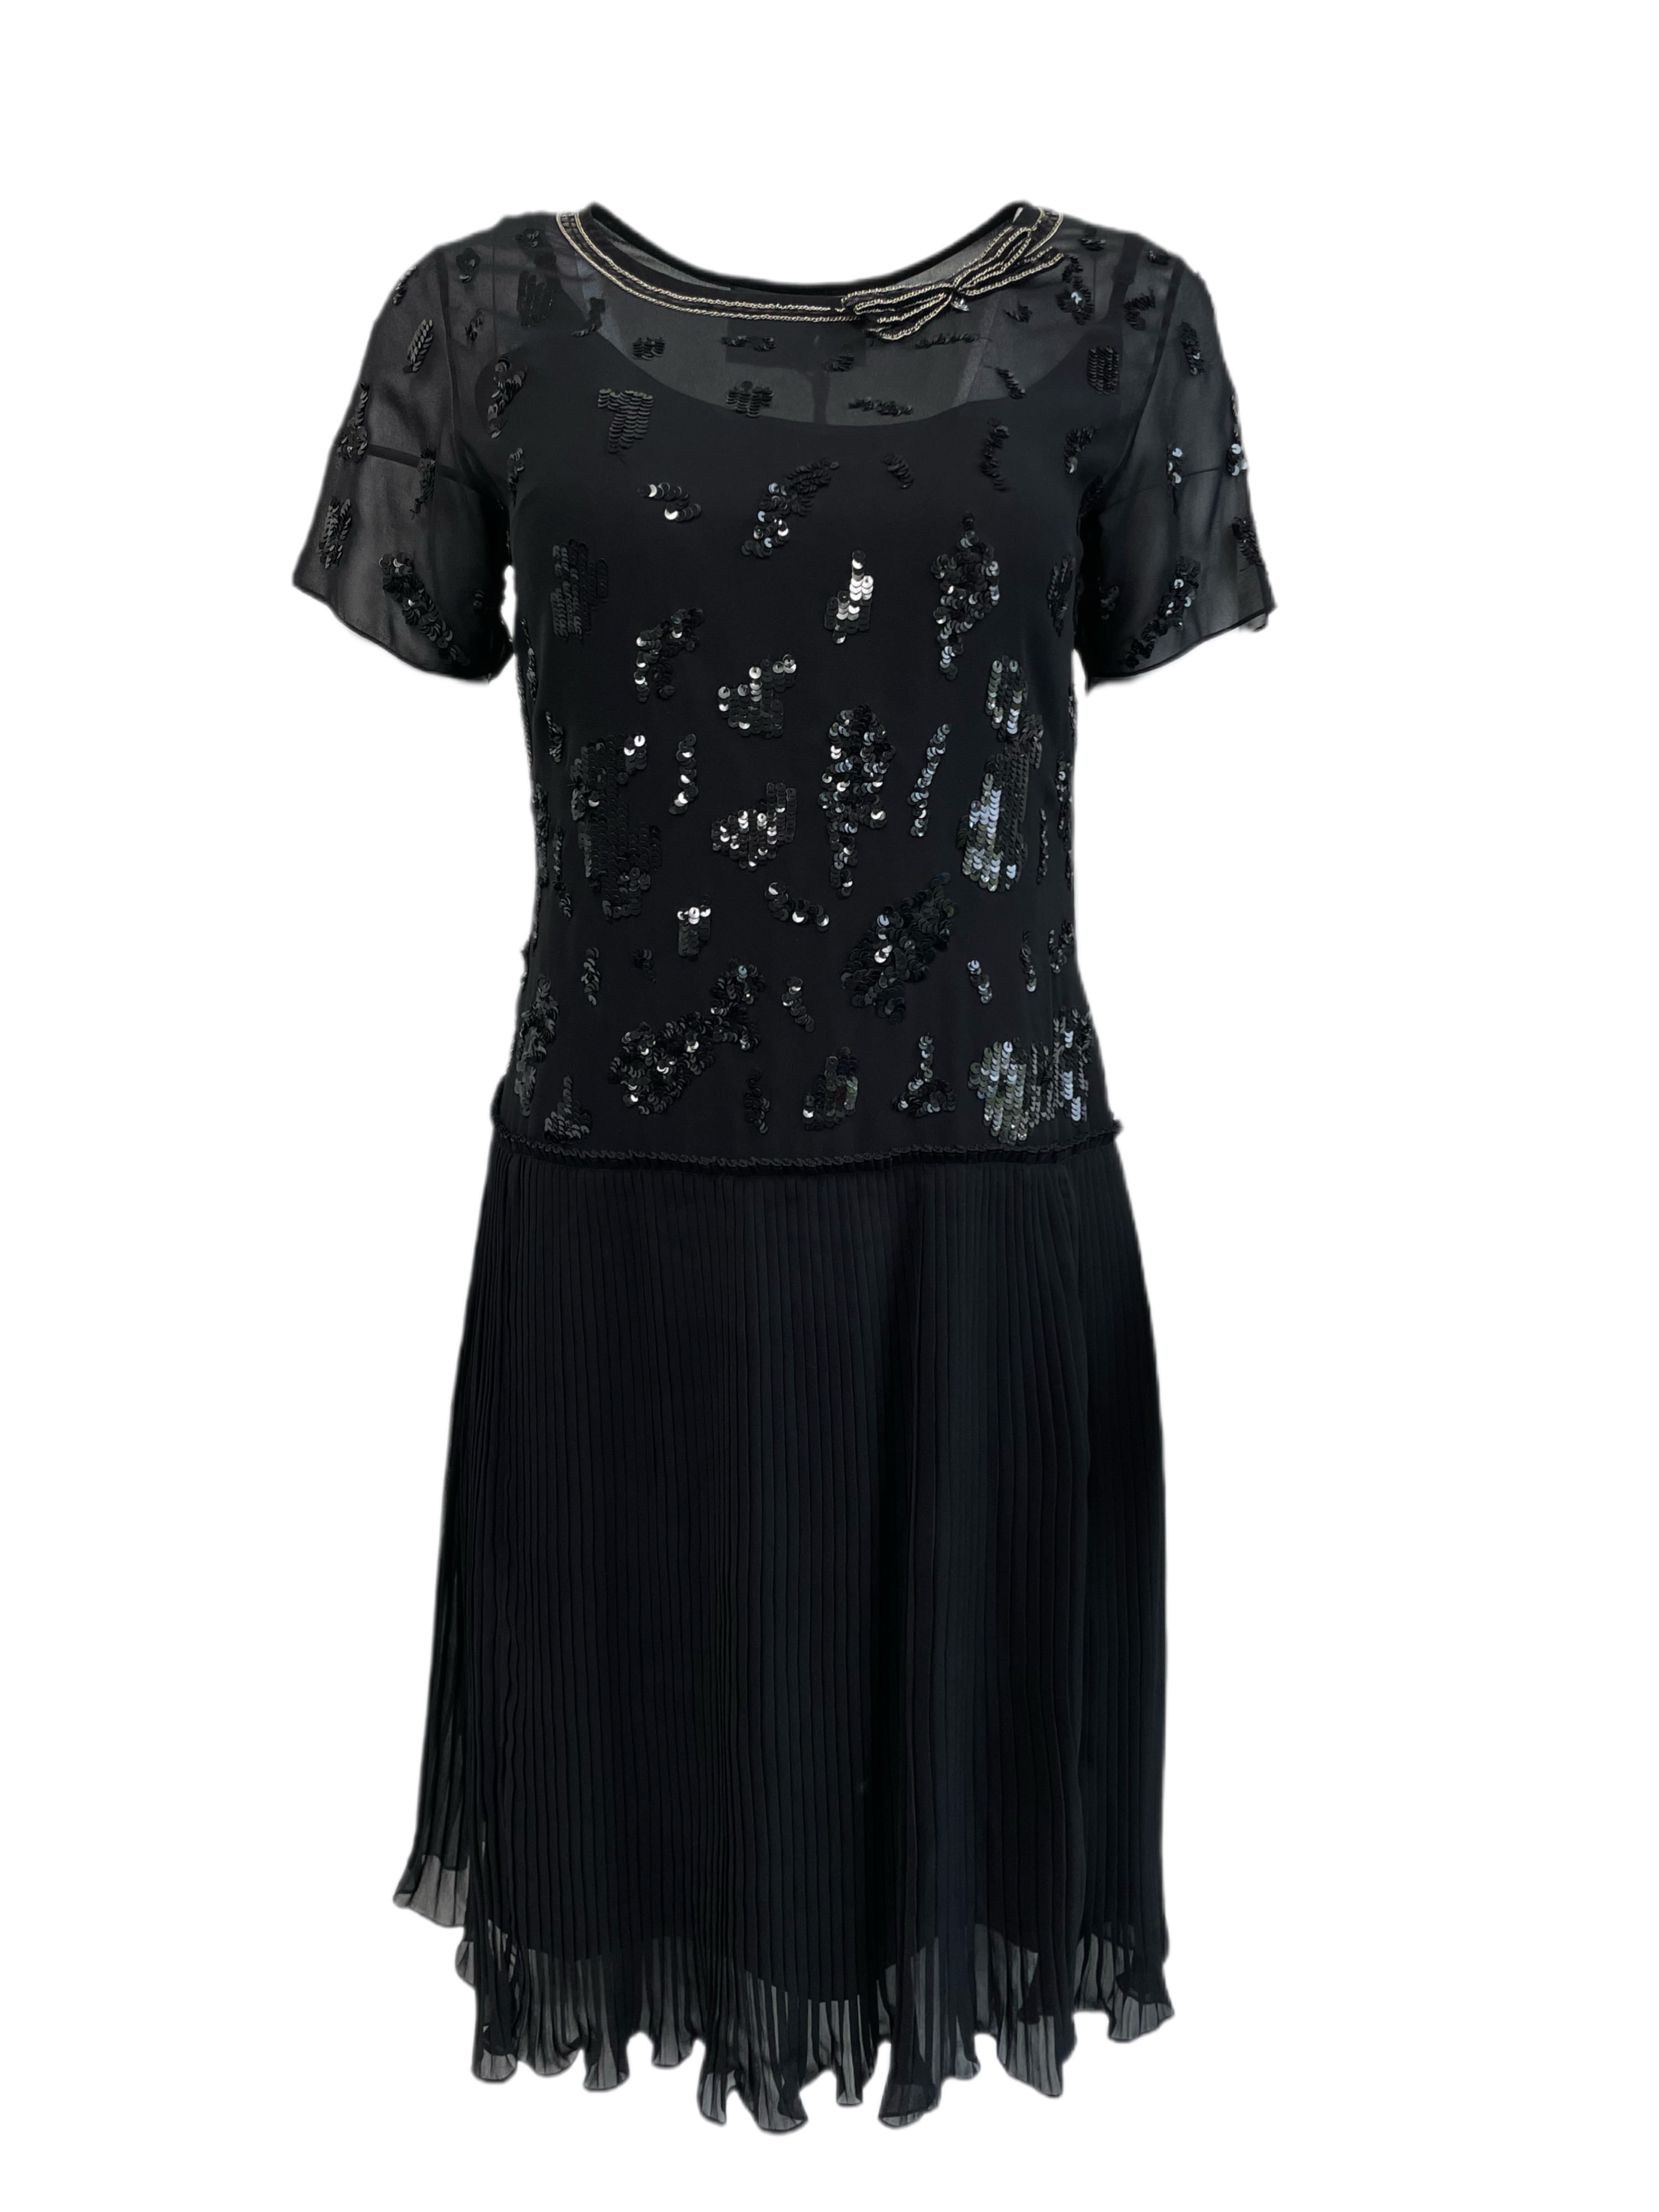 BETTY BLUE Women's Short Sleeve Pleated Sequin Dress IT 44 Black 